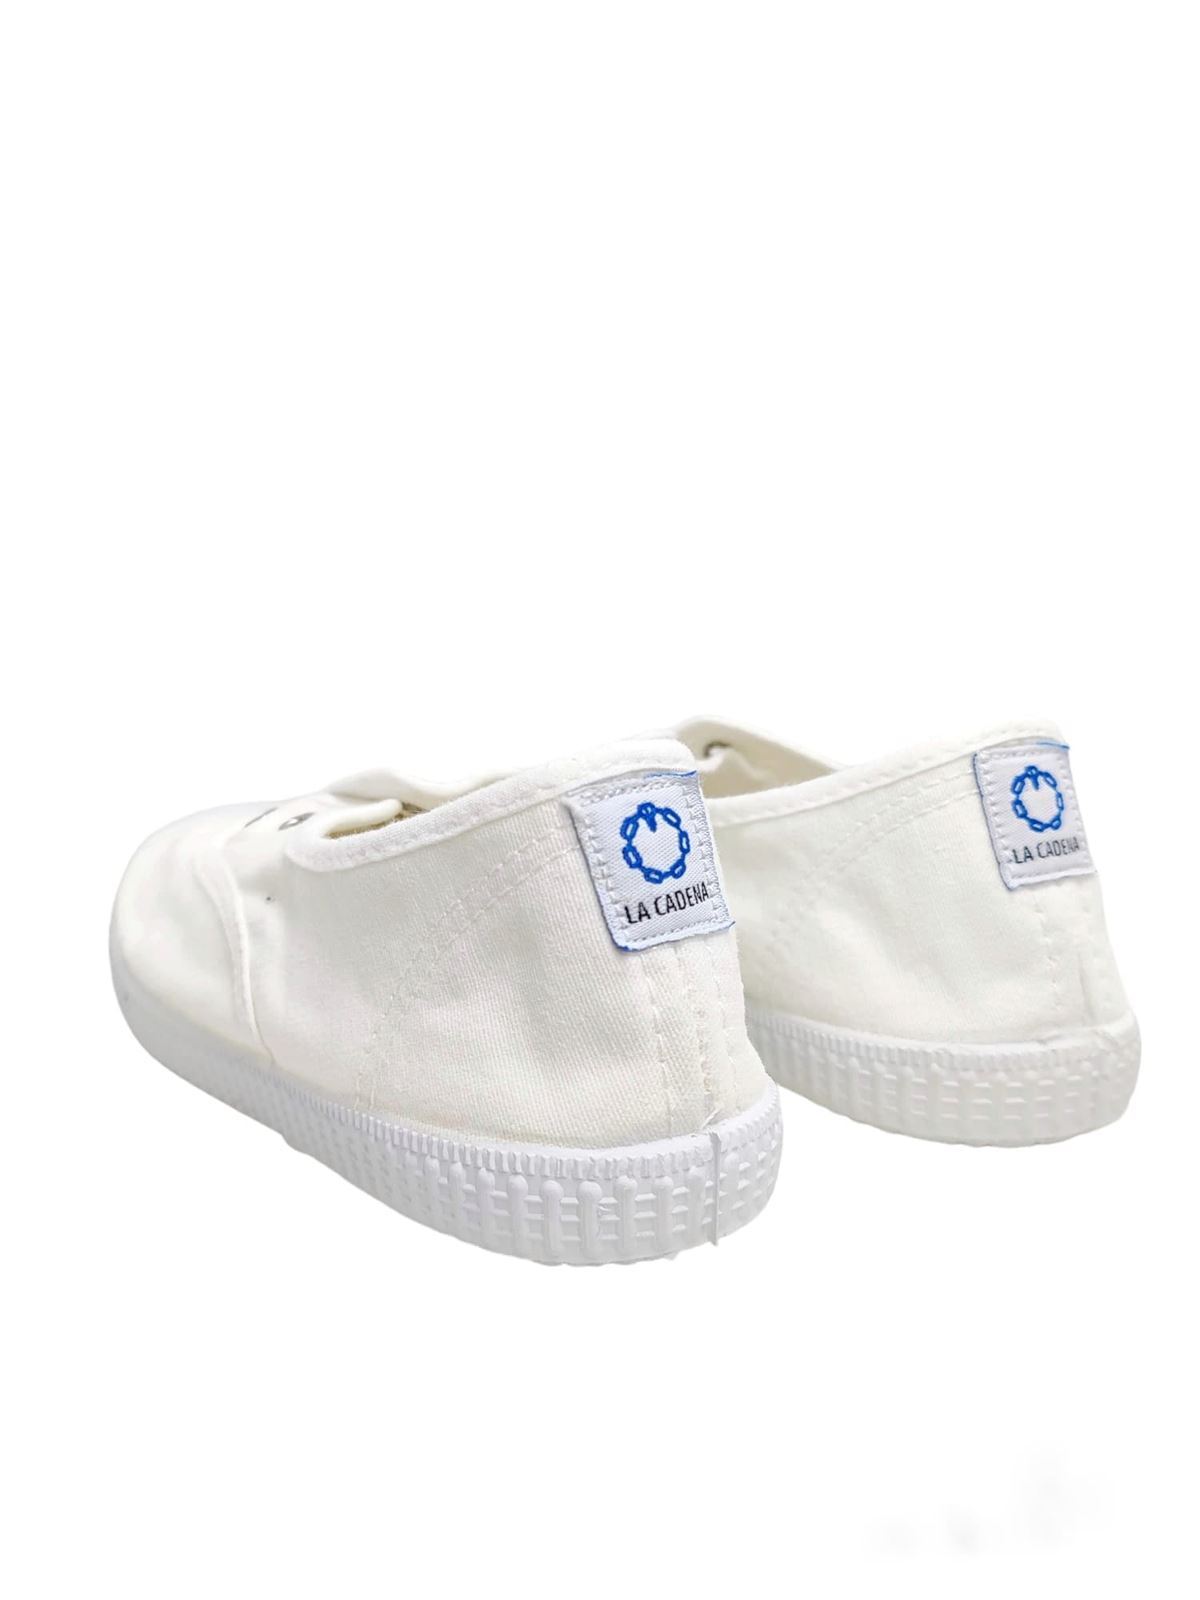 La Cadena Children's Sneakers White Canvas with Toe - Image 4